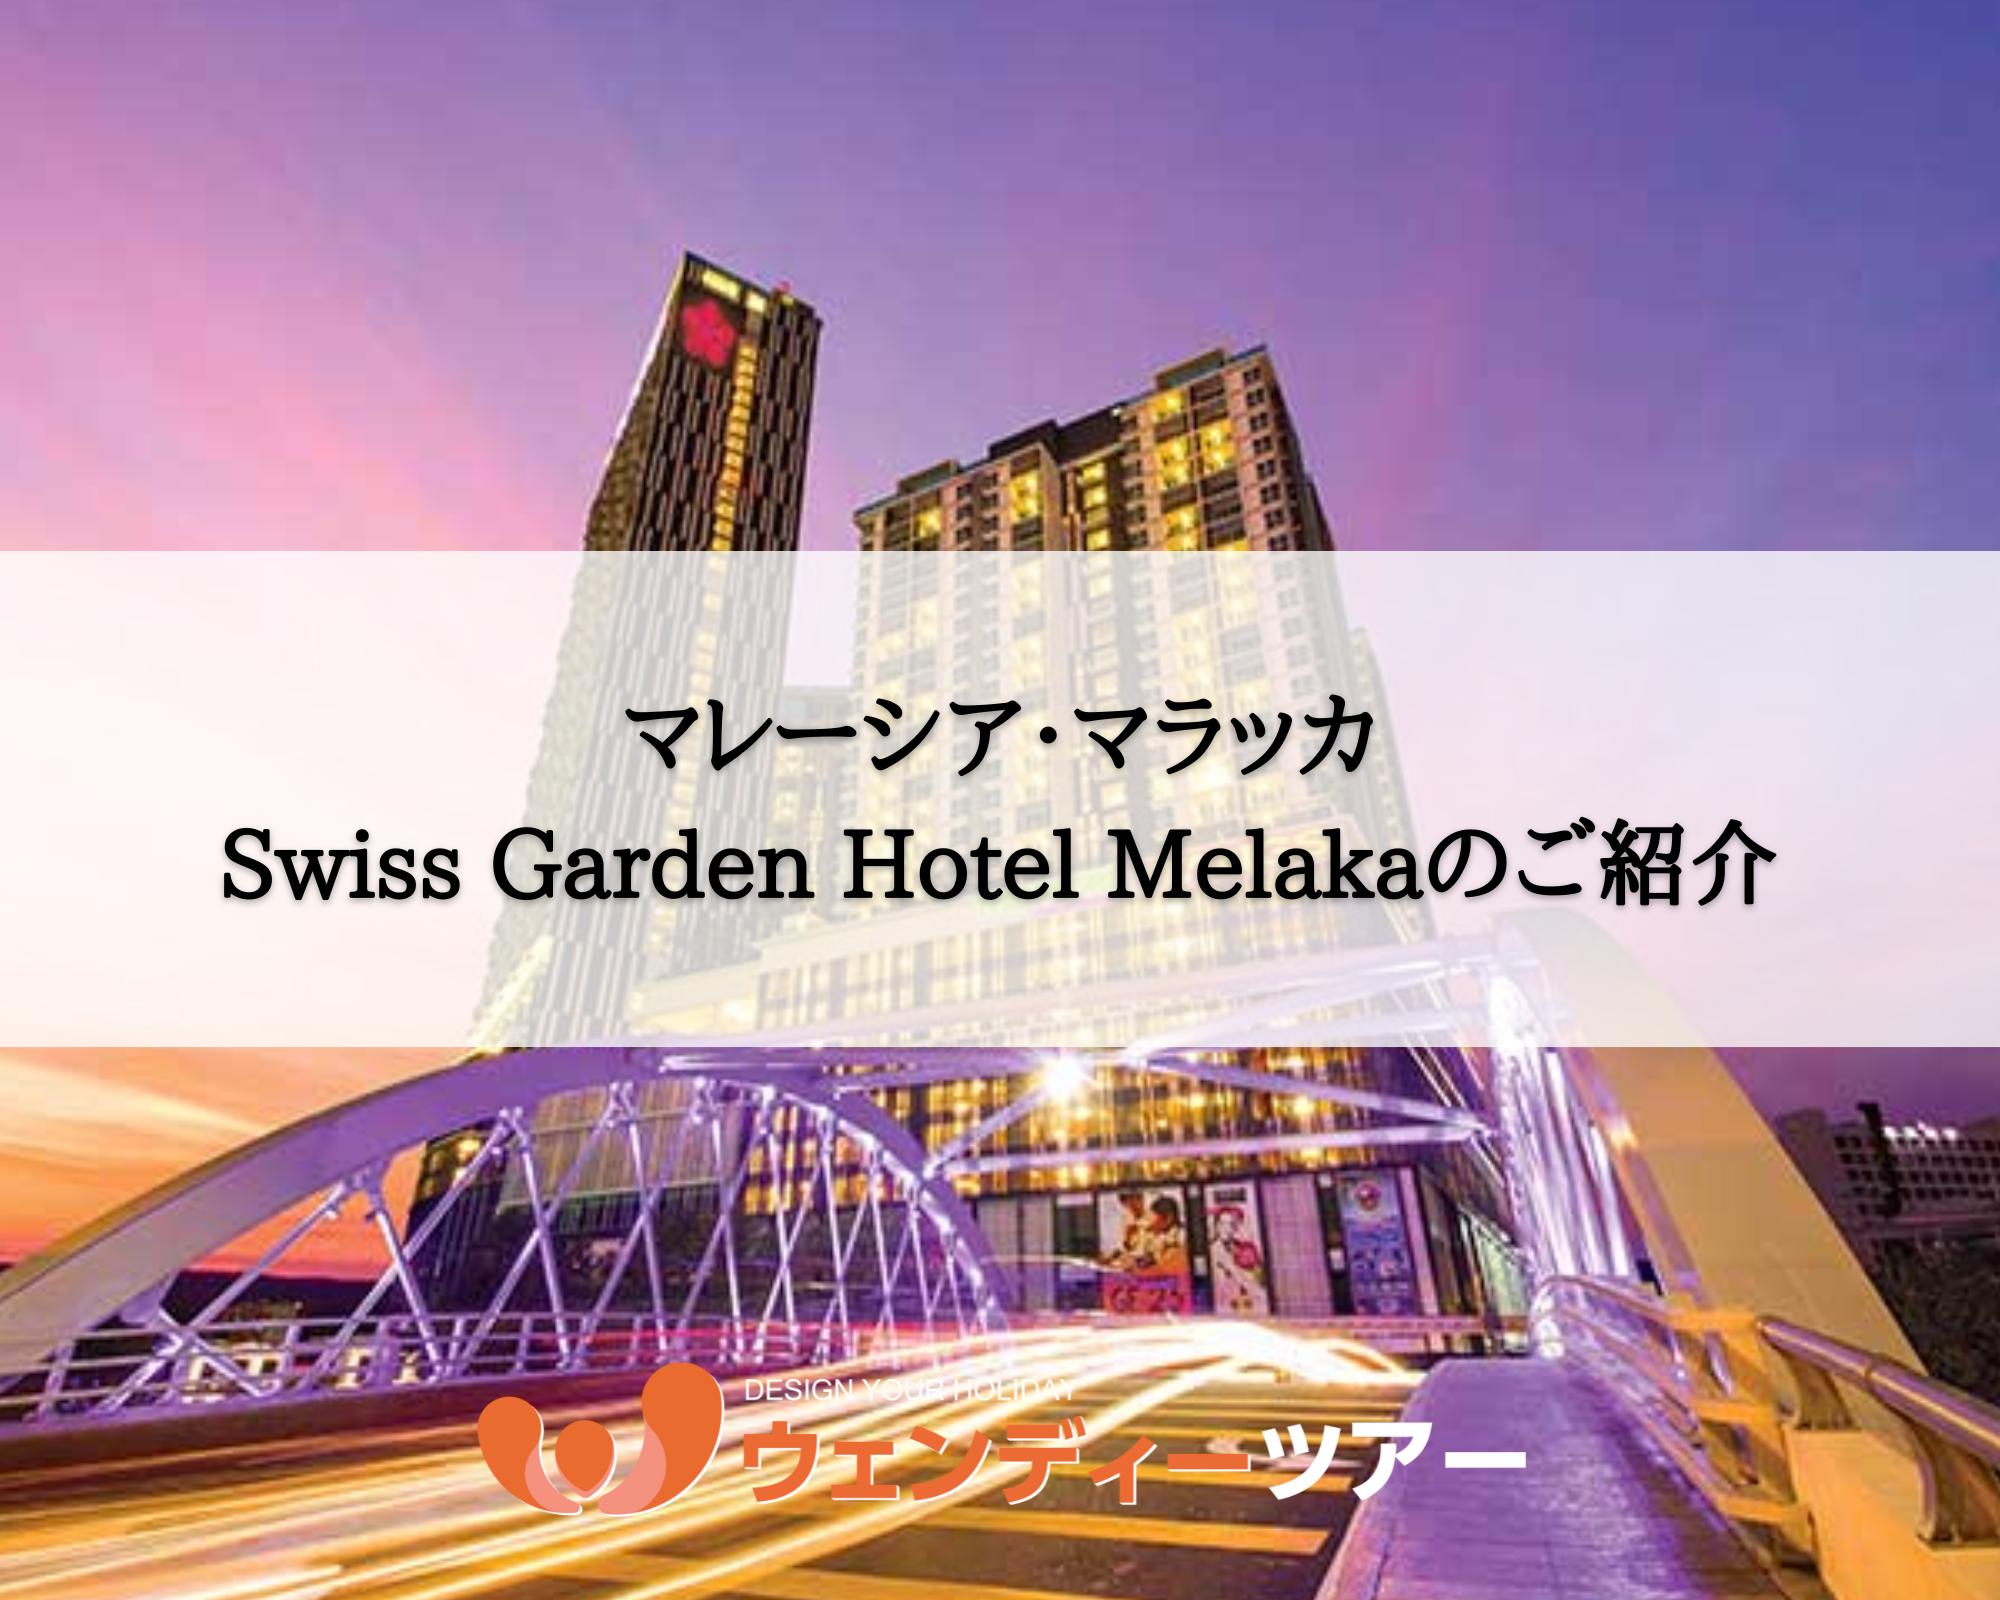 【マレーシア・マラッカ】Swiss Garden Hotel Melaka